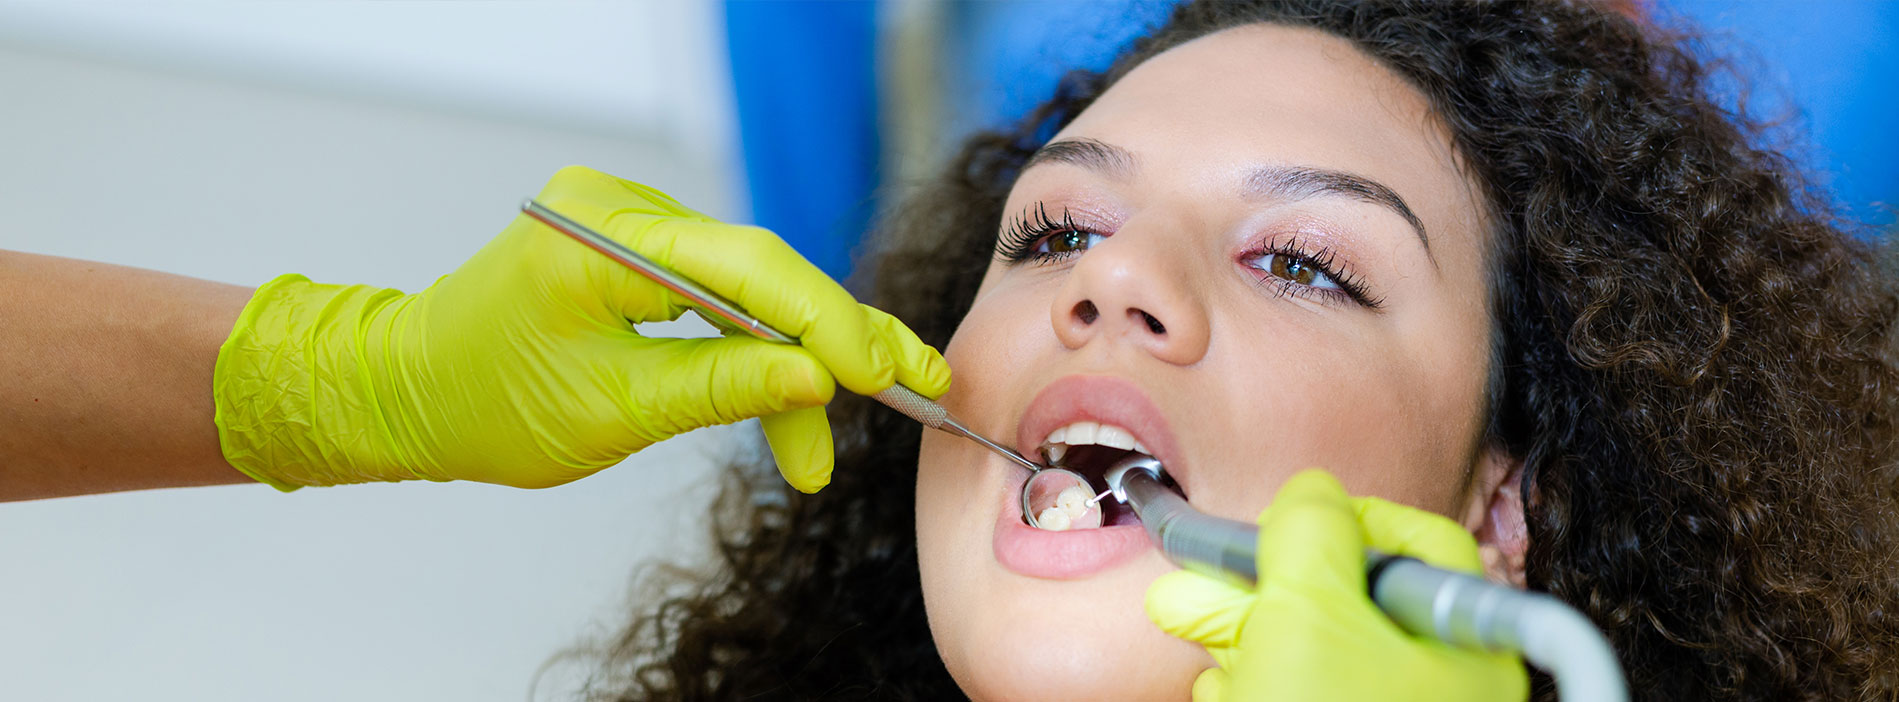 Woman having dental bonding